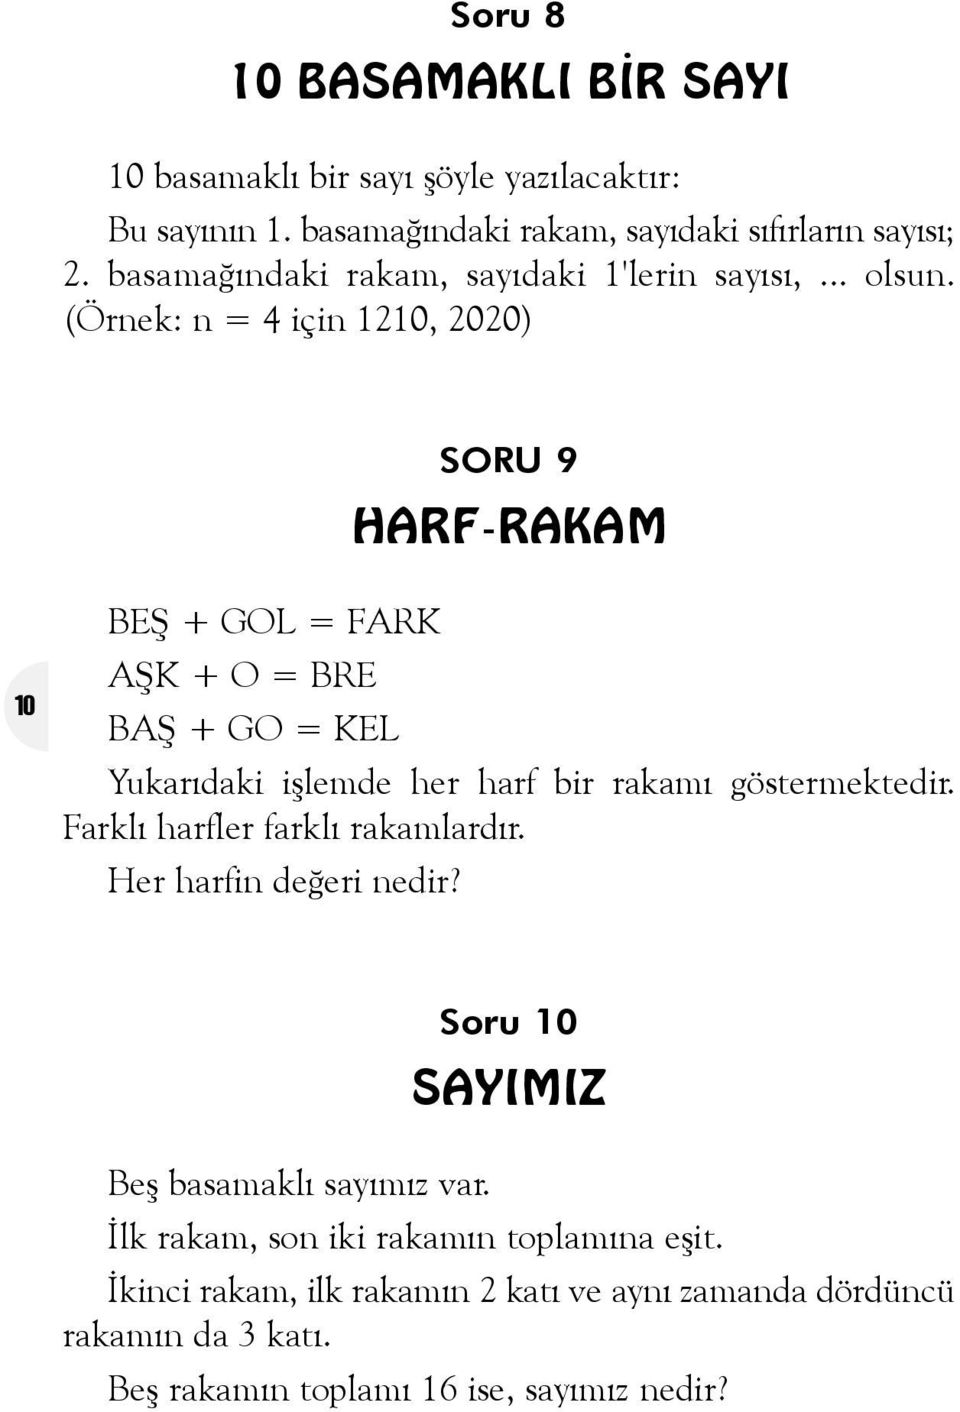 (Örnek: n = 4 için 1210, 2020) SORU 9 HARF-RAKAM 10 BEÞ + GOL = FARK AÞK + O = BRE BAÞ + GO = KEL Yukarýdaki iþlemde her harf bir rakamý göstermektedir.